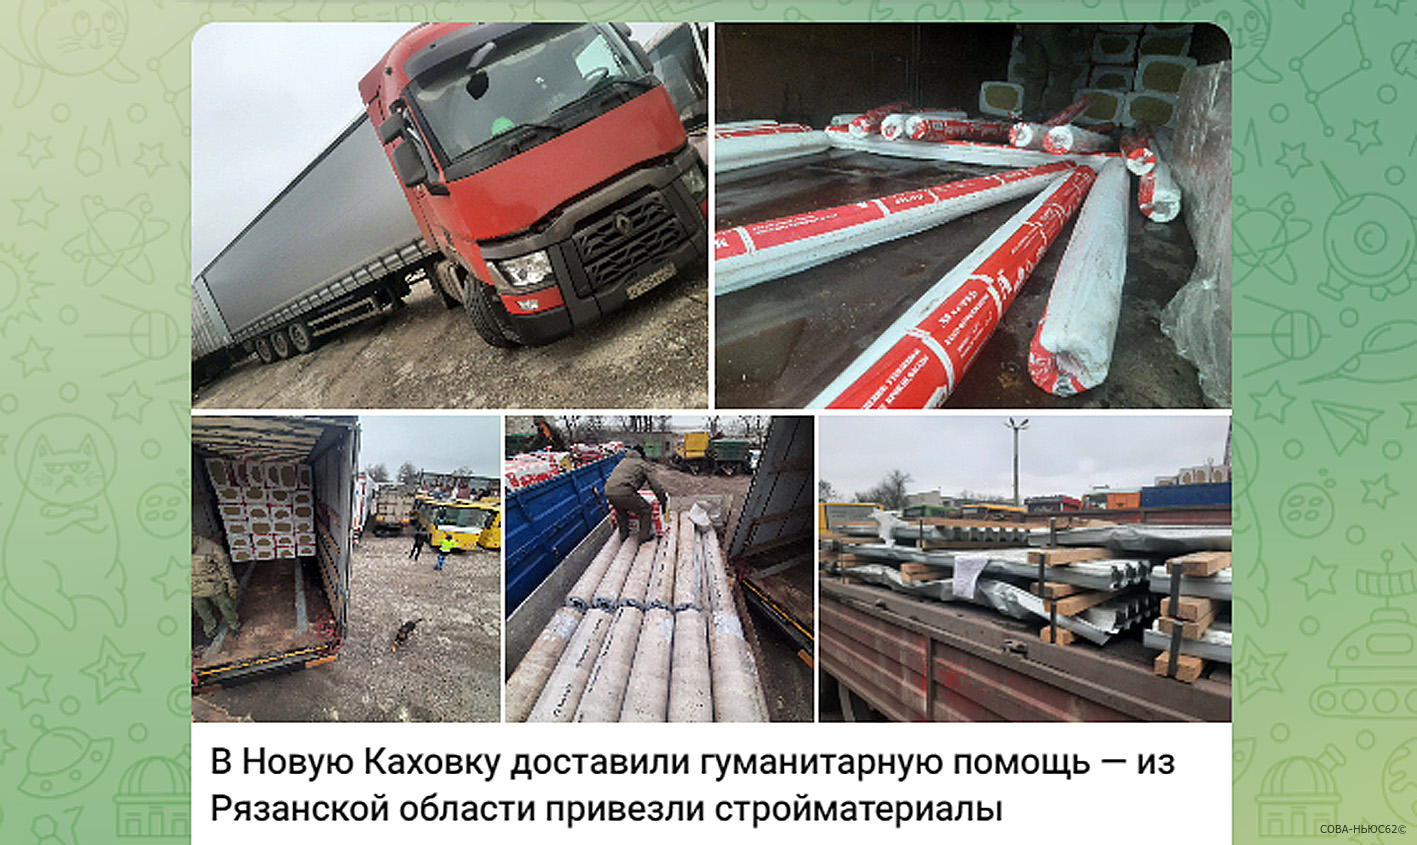 Гуманитарная помощь из Рязани на грузовиках прибыла в Новую Каховку